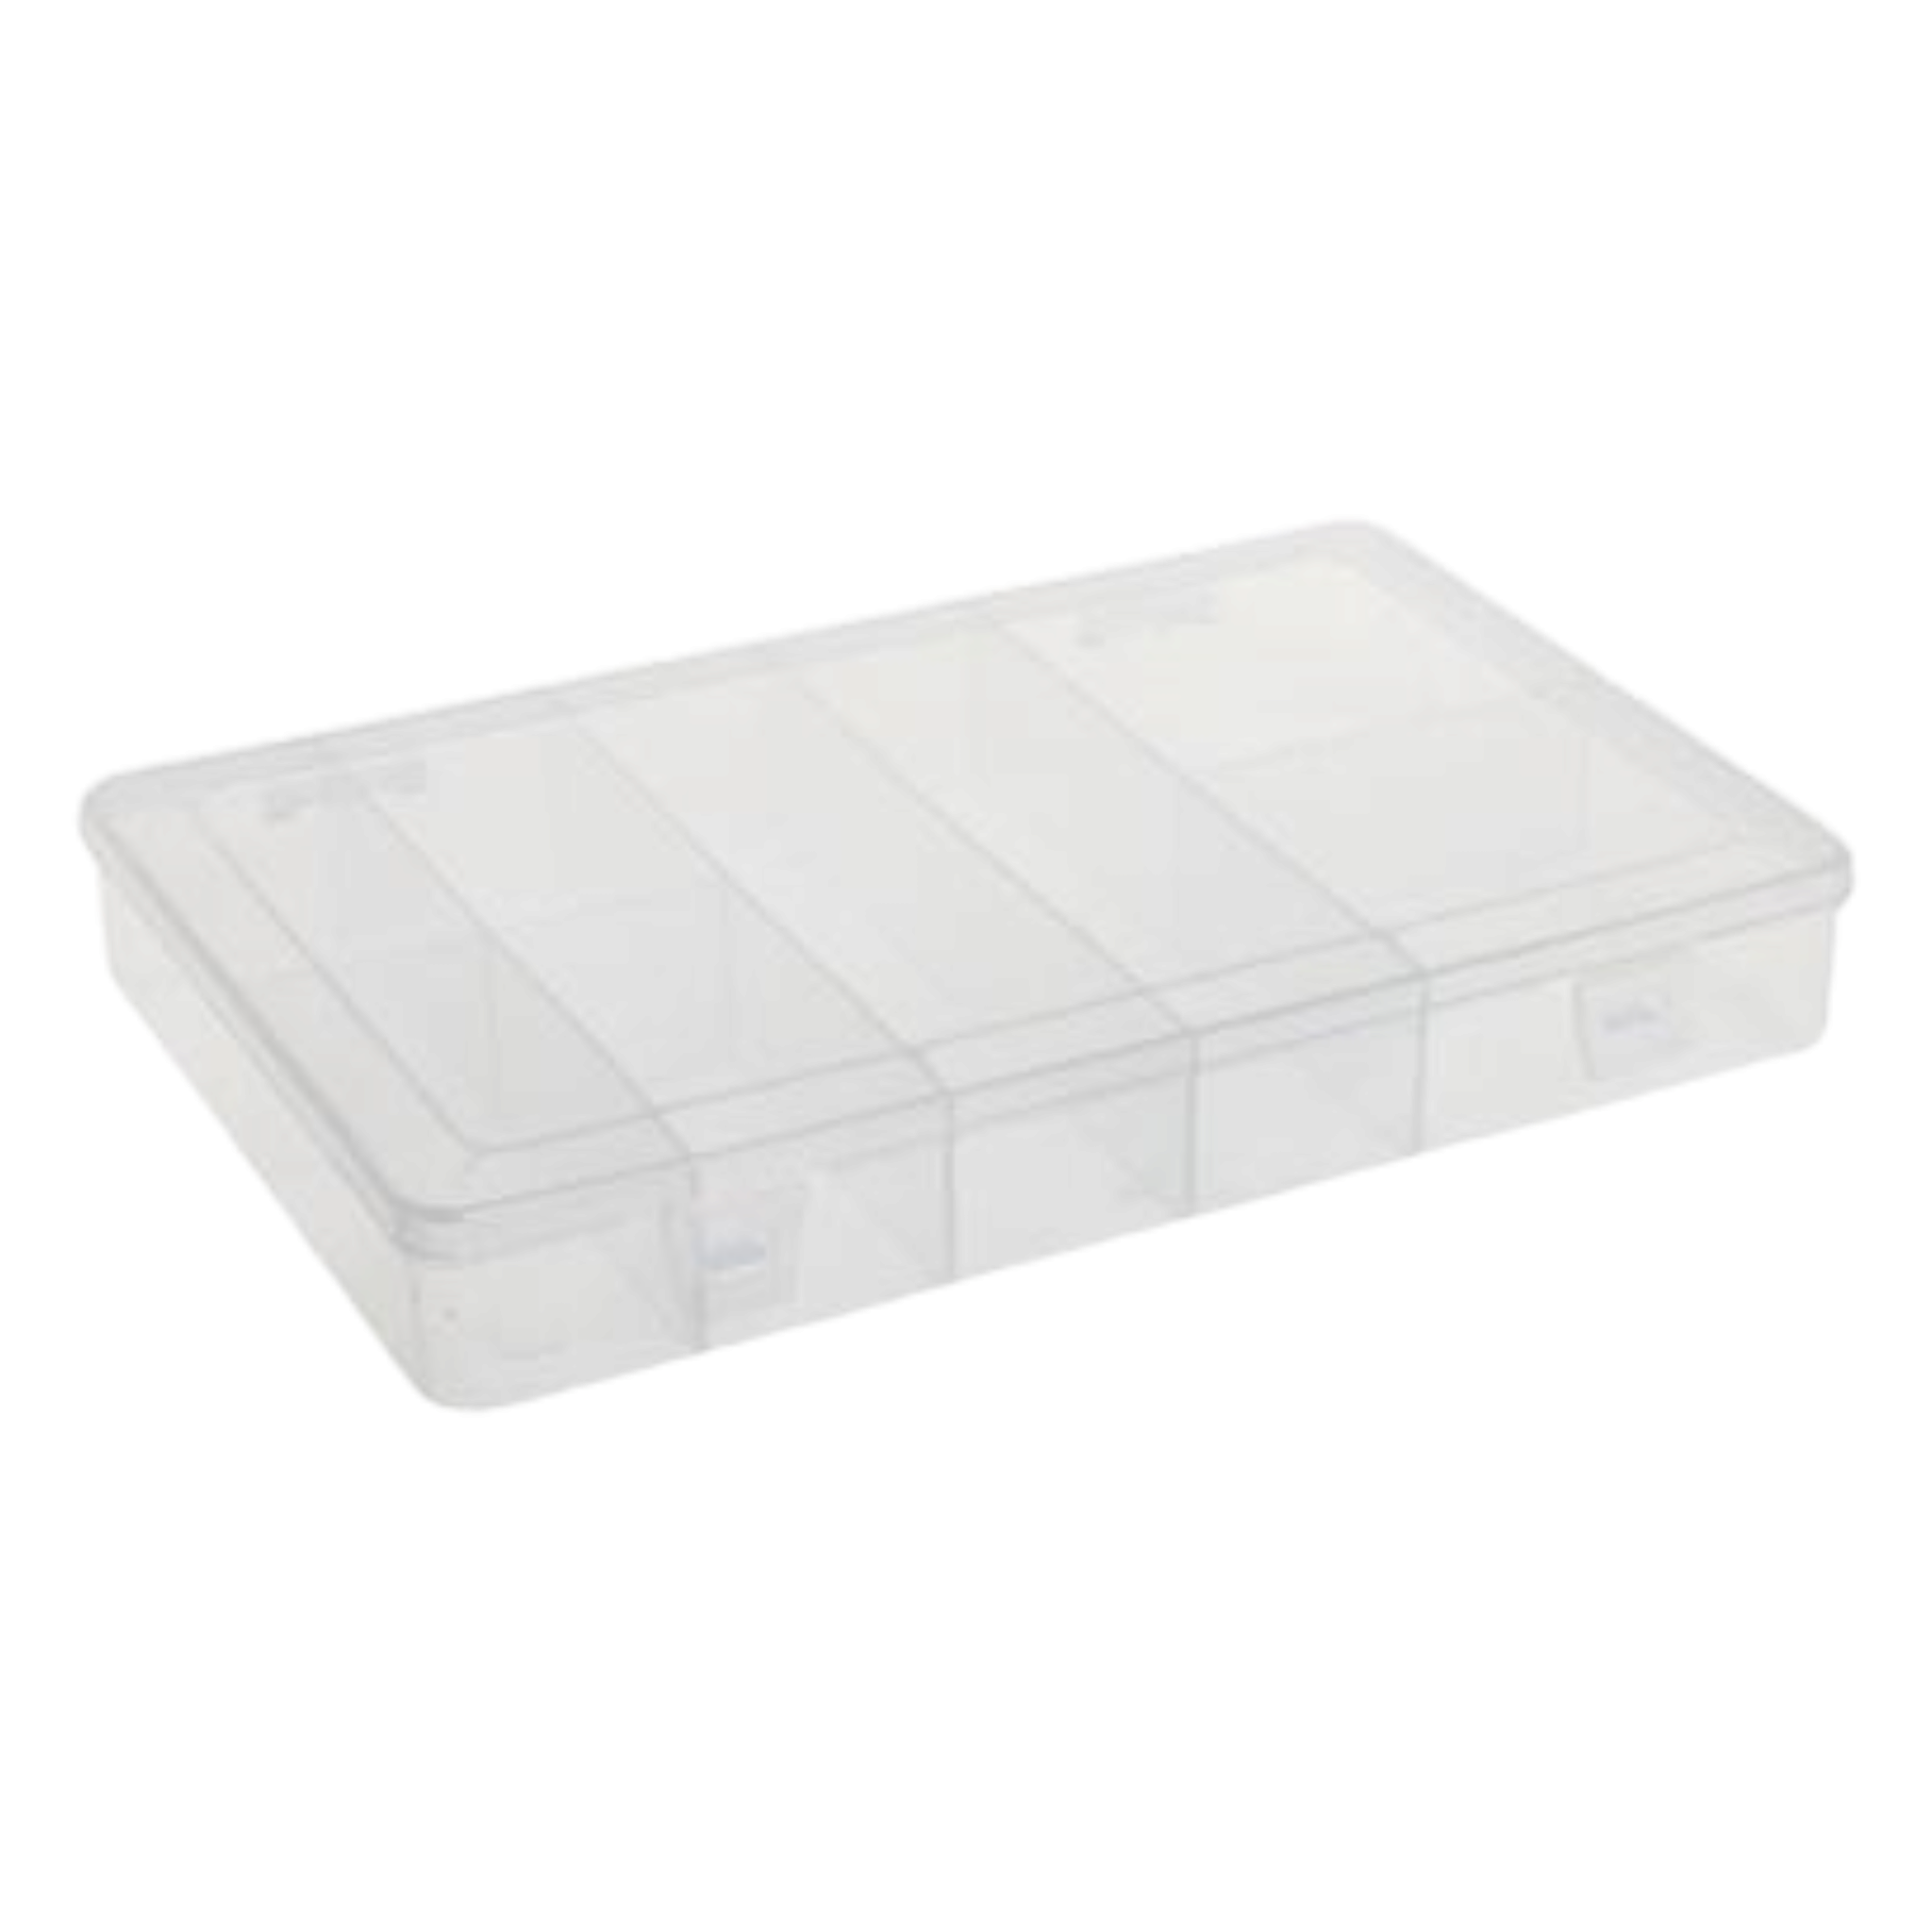 Plastic Utility Mega Box 27x18x3.8cm 8-Compartments